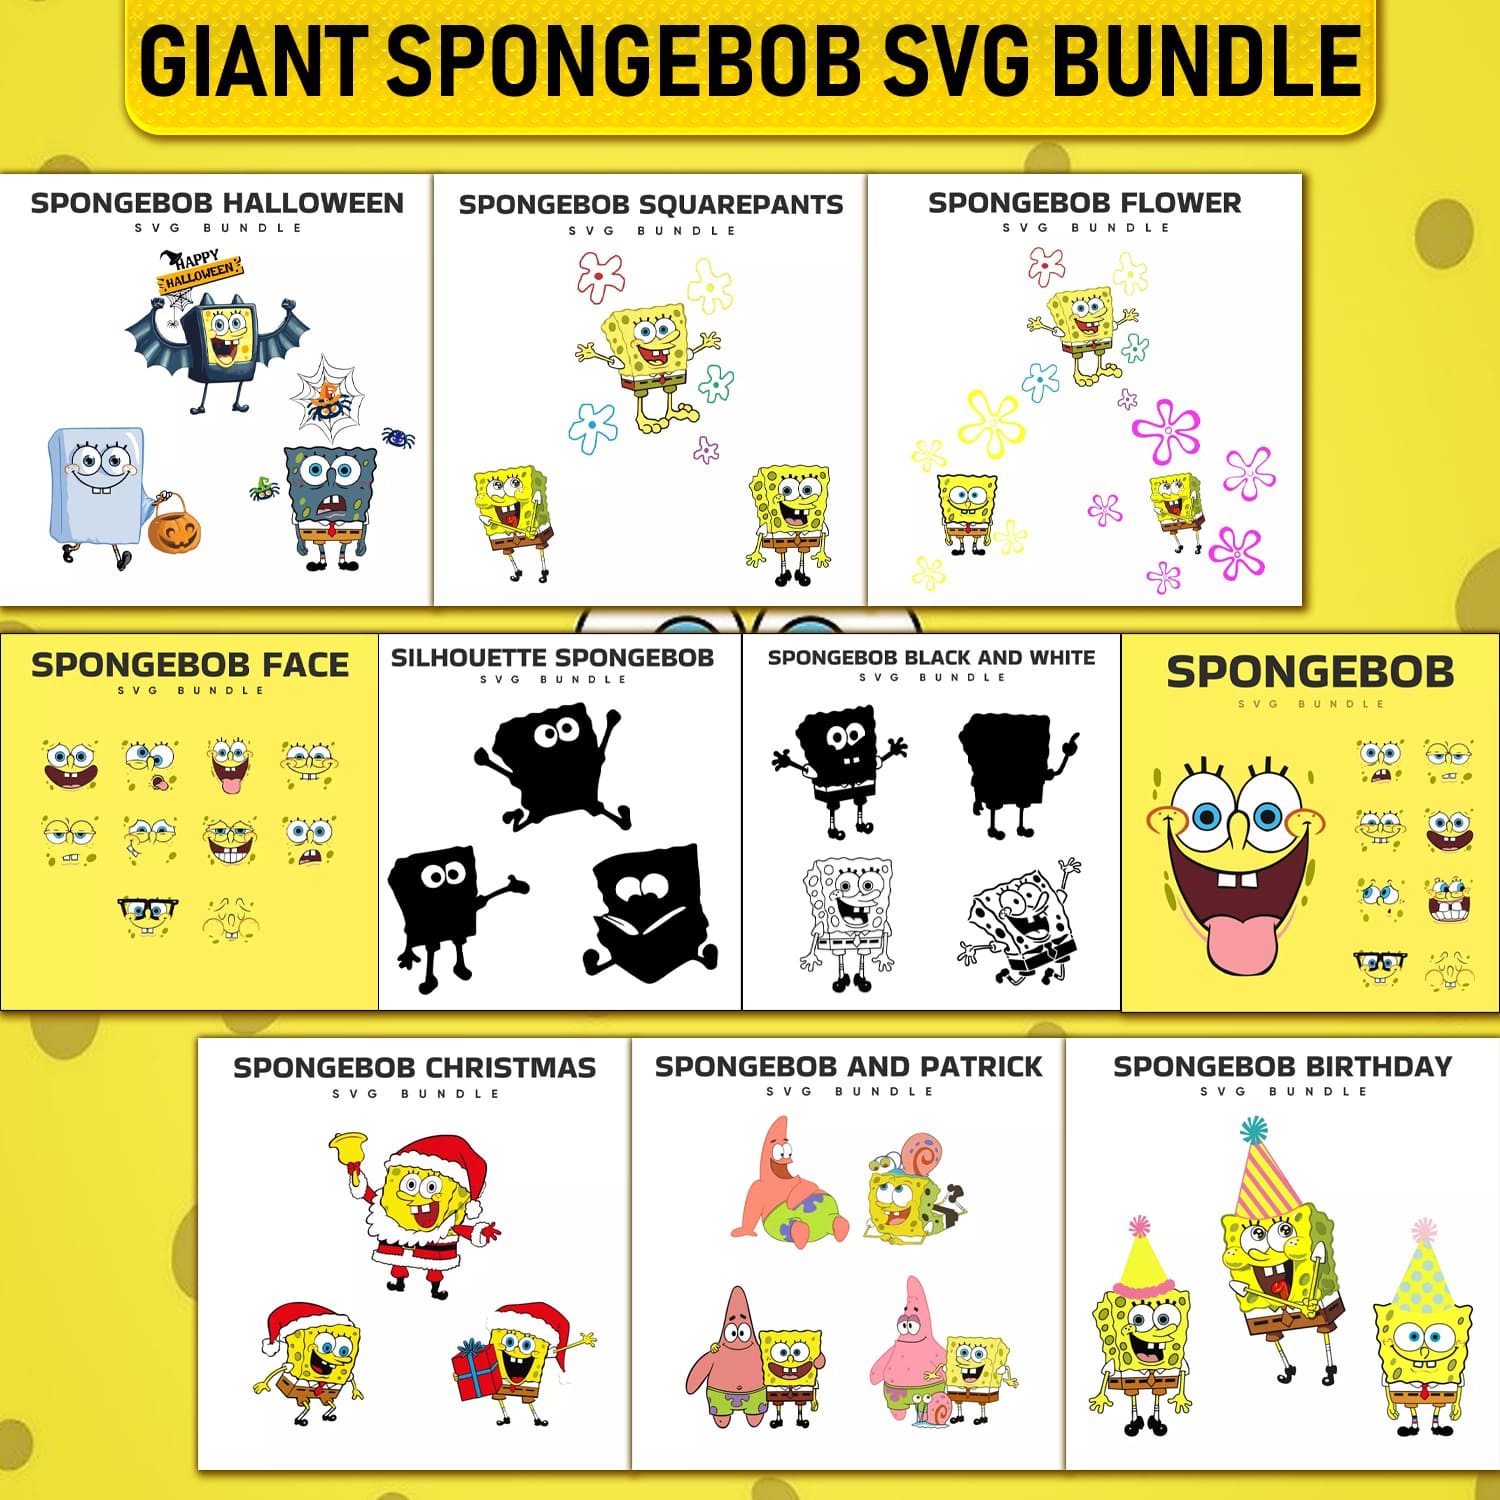 Giant Spongebob SVG Bundle cover image.